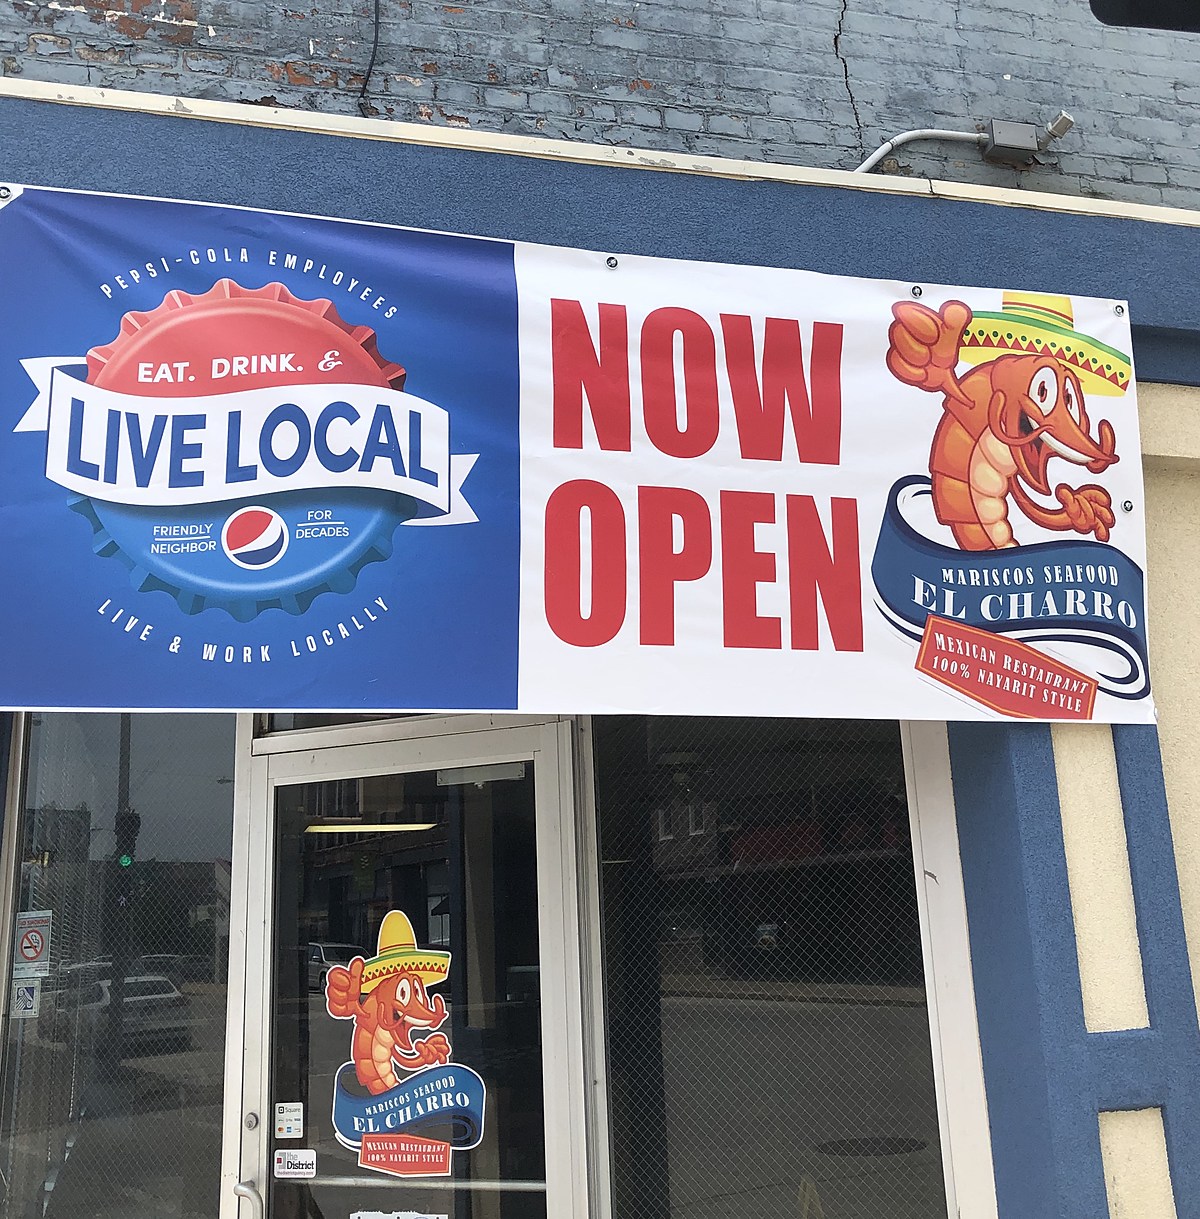 New Restaurant in Quincy is Open!